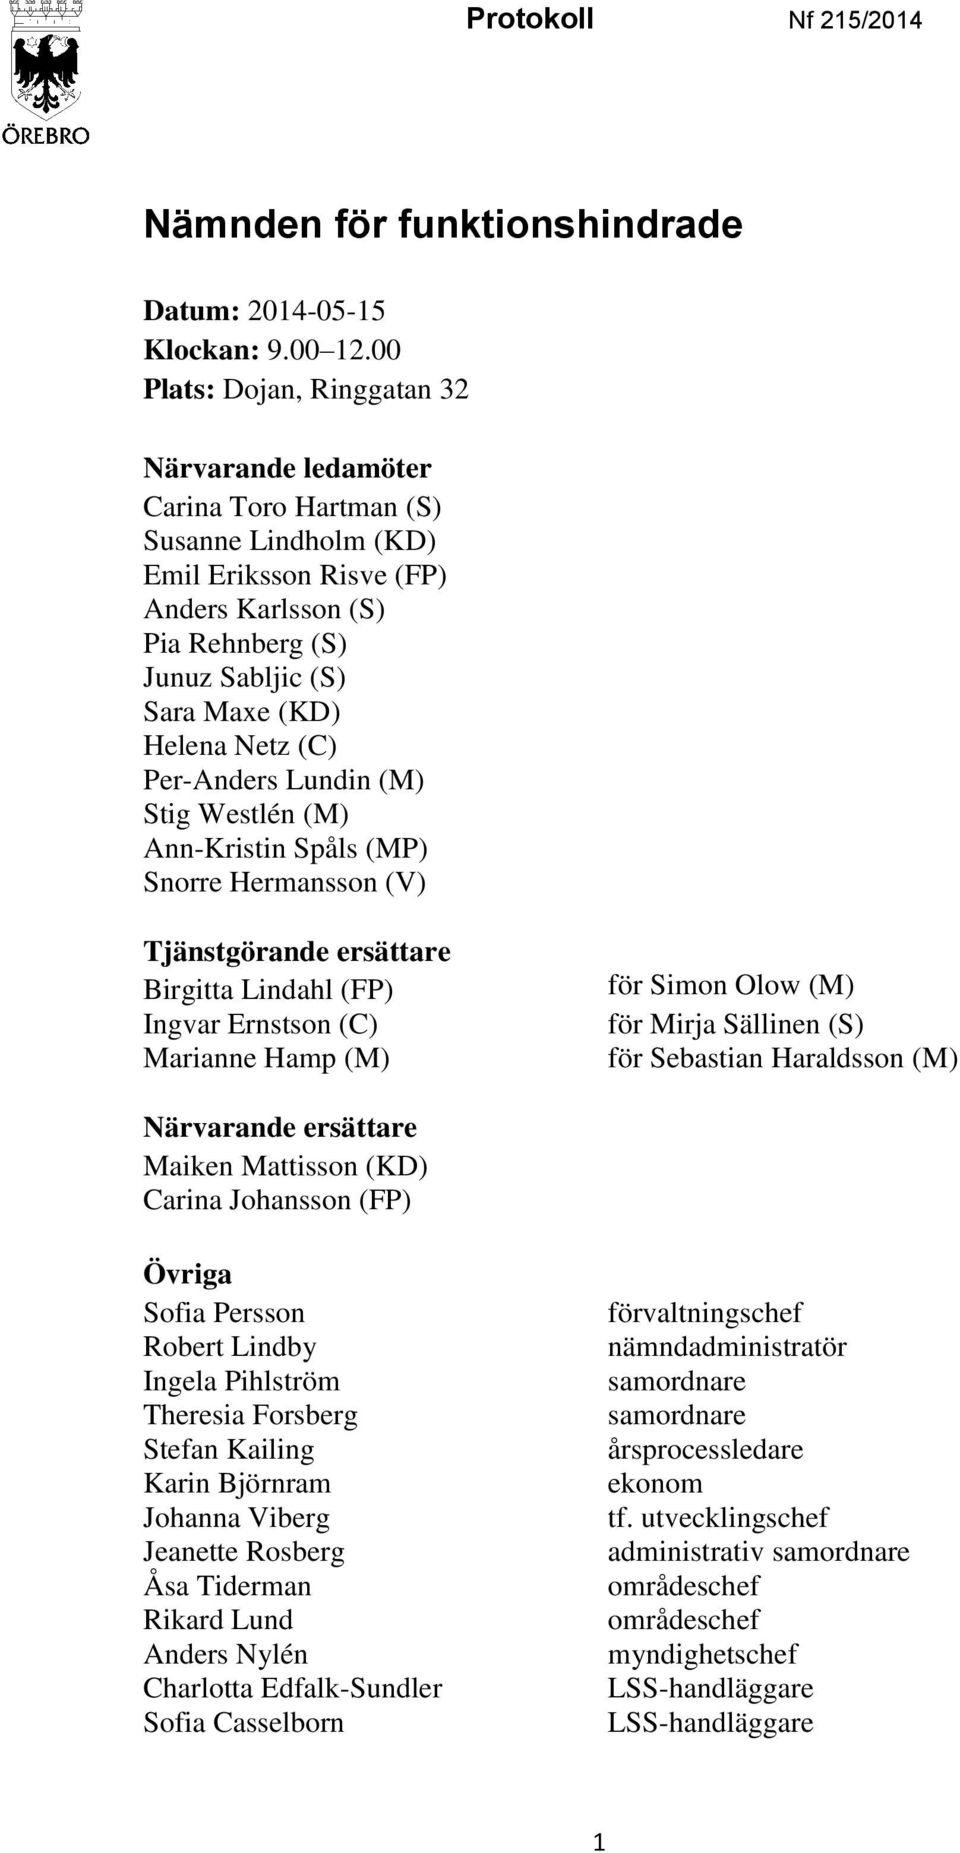 Netz (C) Per-Anders Lundin (M) Stig Westlén (M) Ann-Kristin Spåls (MP) Snorre Hermansson (V) Tjänstgörande ersättare Birgitta Lindahl (FP) Ingvar Ernstson (C) Marianne Hamp (M) för Simon Olow (M) för